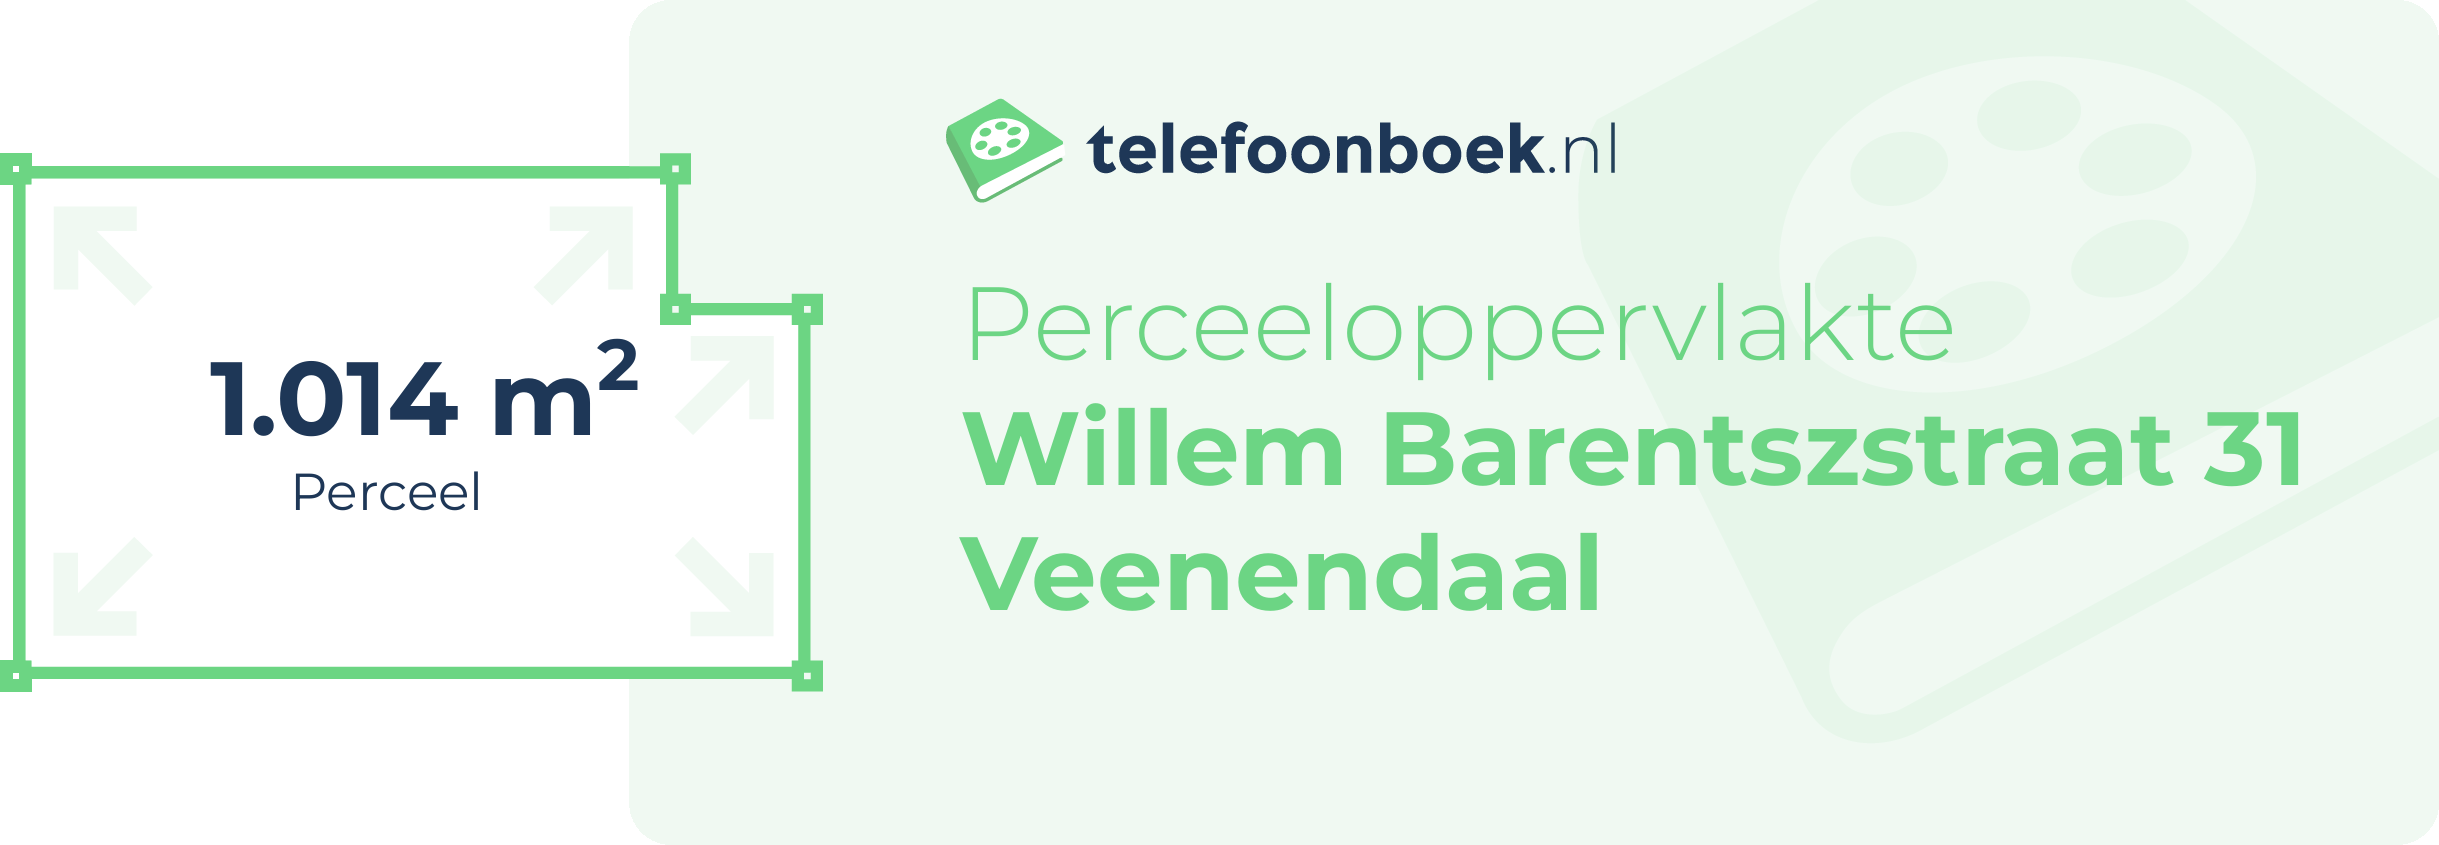 Perceeloppervlakte Willem Barentszstraat 31 Veenendaal